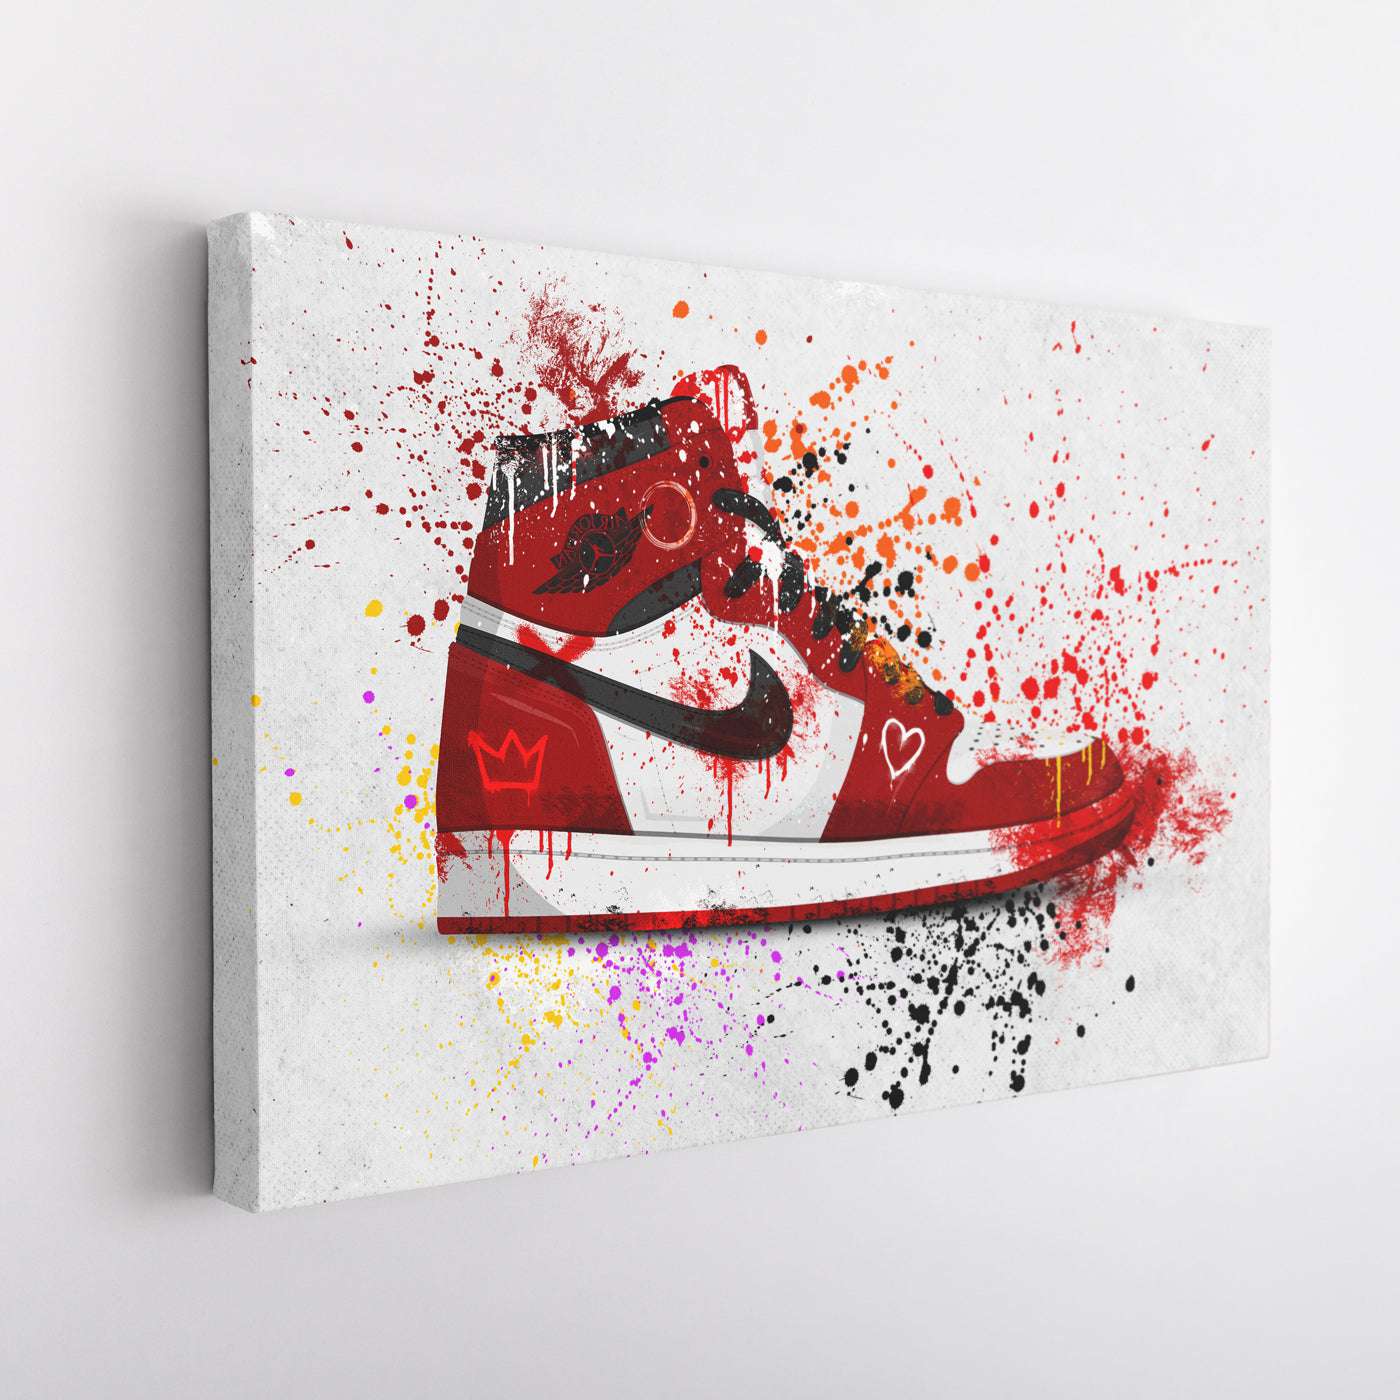 Nike Jordan Air Graffiti Sneaker - Magna Canvas